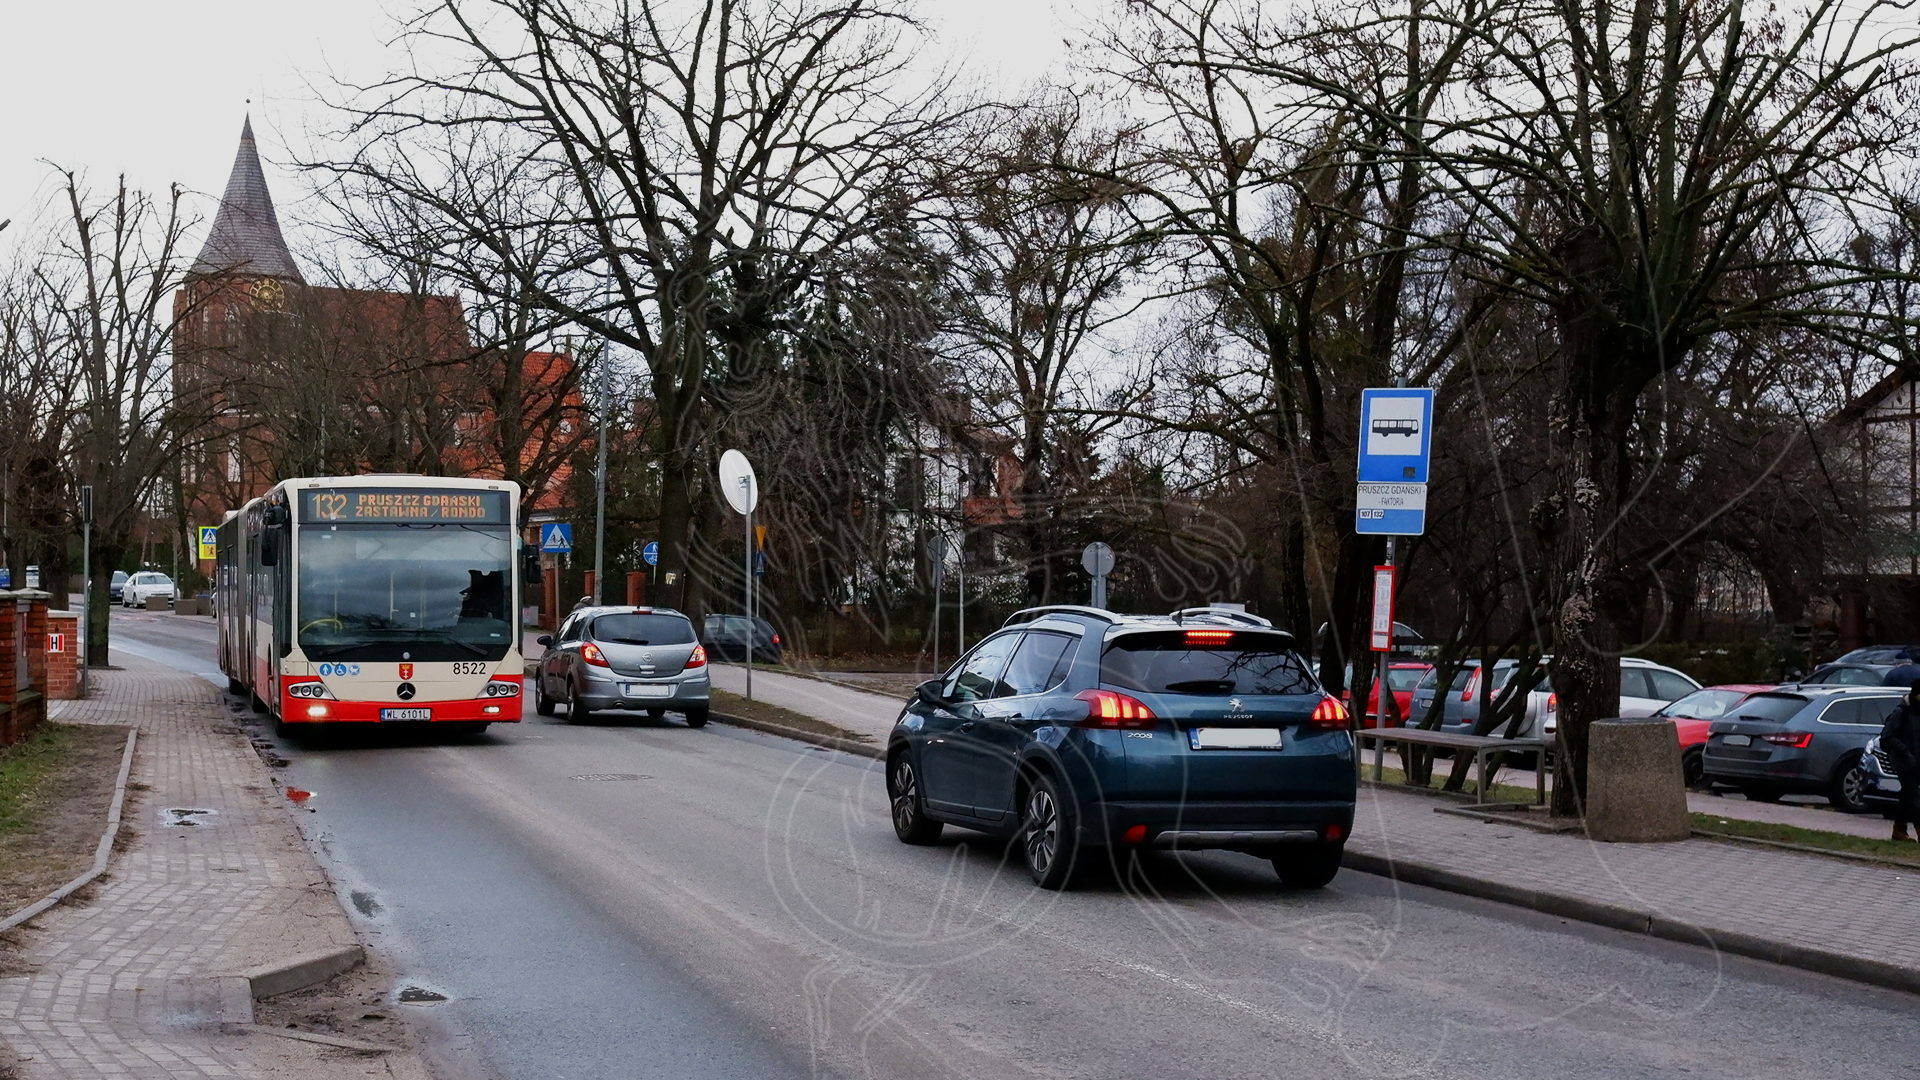 aktualność: Dodatkowy poranny kurs autobusu 132 z Pruszcza Gdańskiego do Gdańska